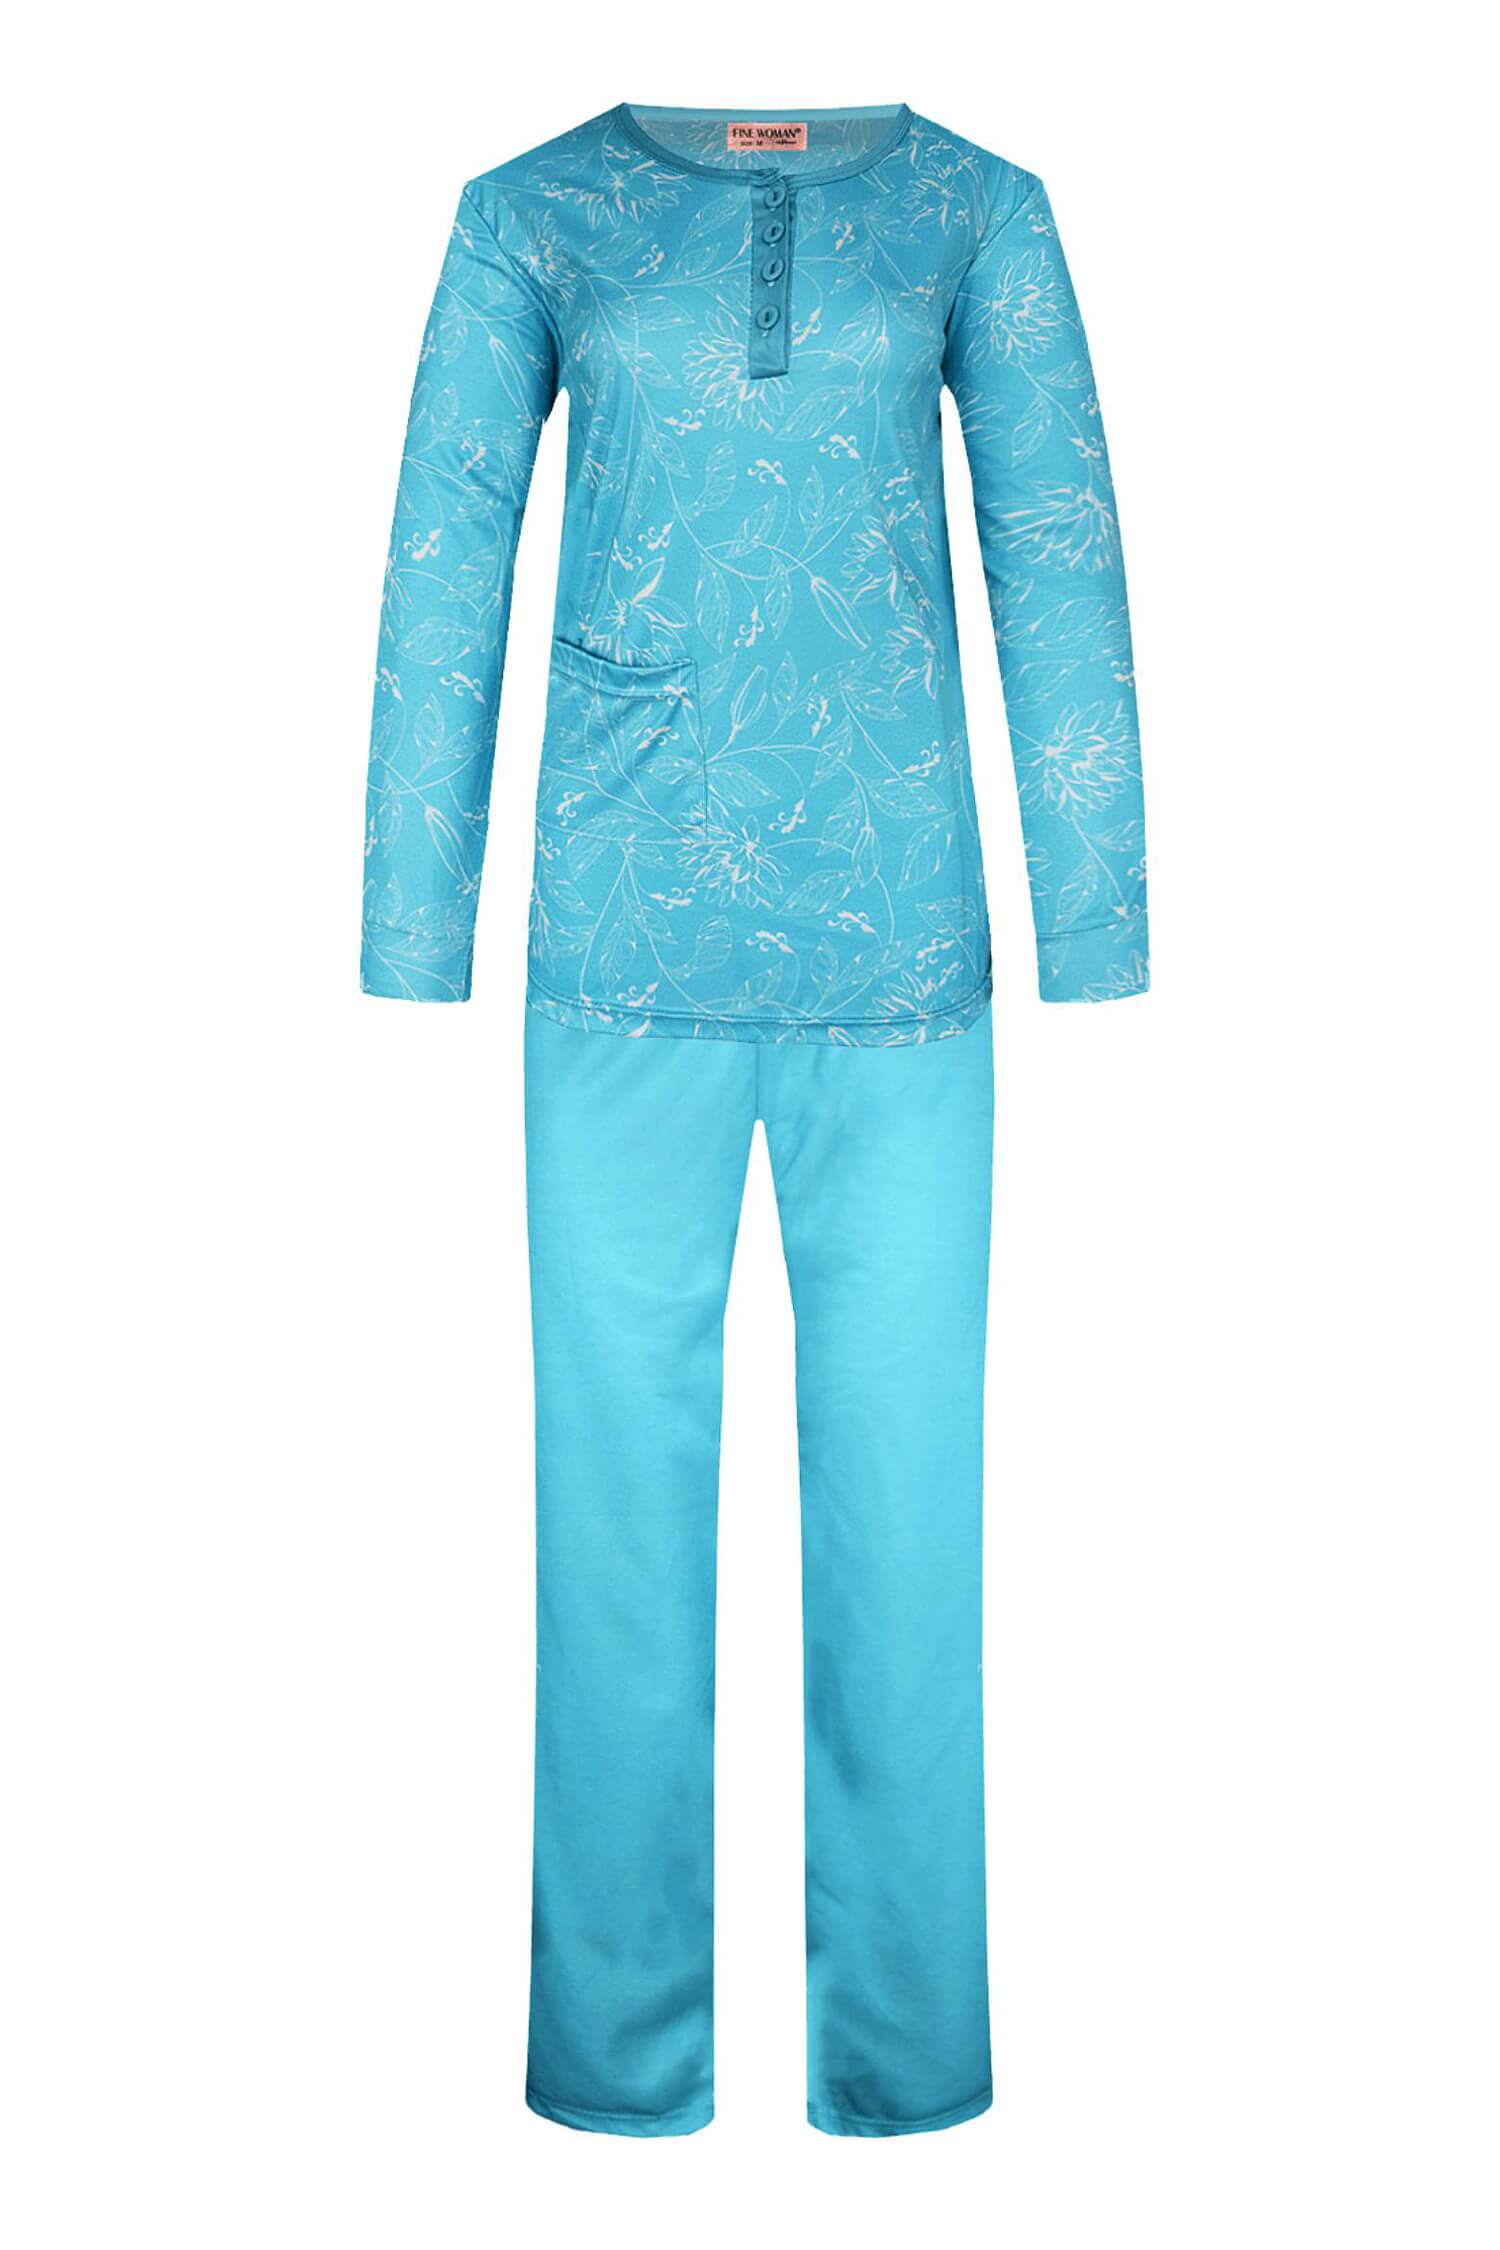 Sára dámské pyžamo dlouhý rukáv 2299 XL světle modrá